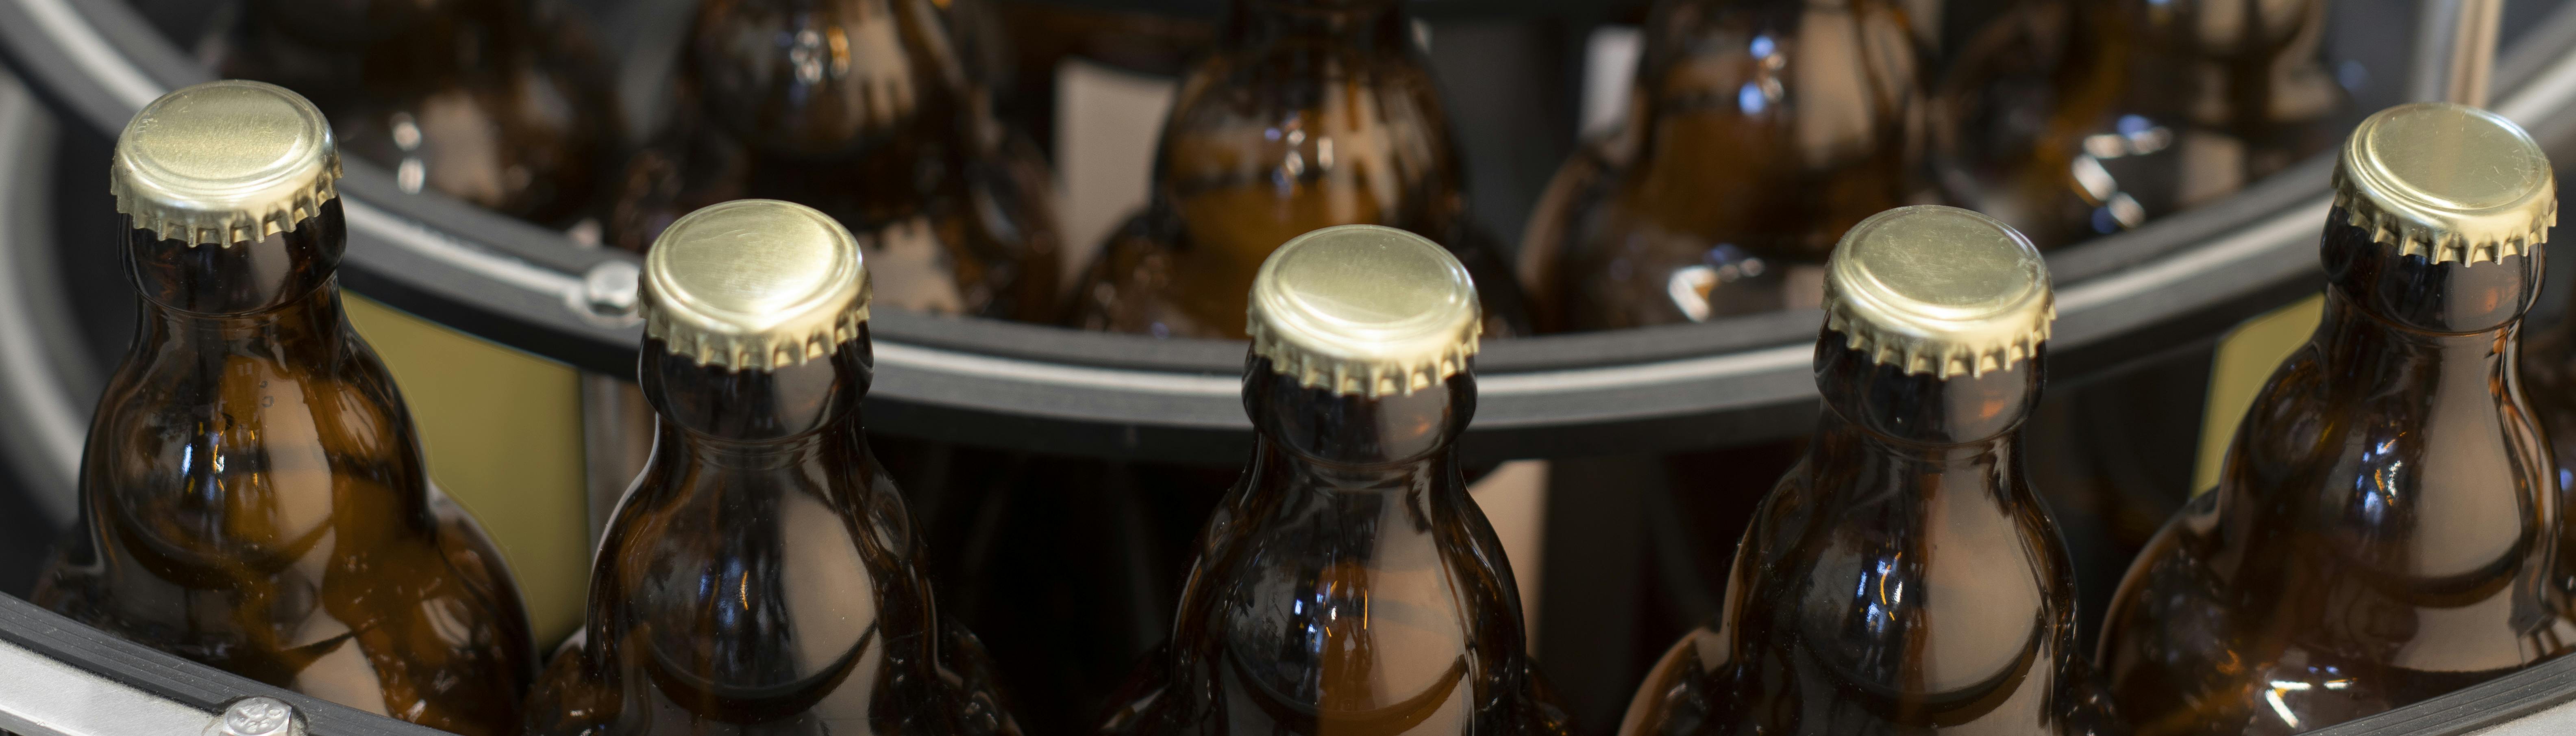 Una tavola indicata per l'accumulo di bottiglie, in questo caso vi sono collocate delle bottiglie di birra con tappo corona ed etichetta personalizzata Quinti